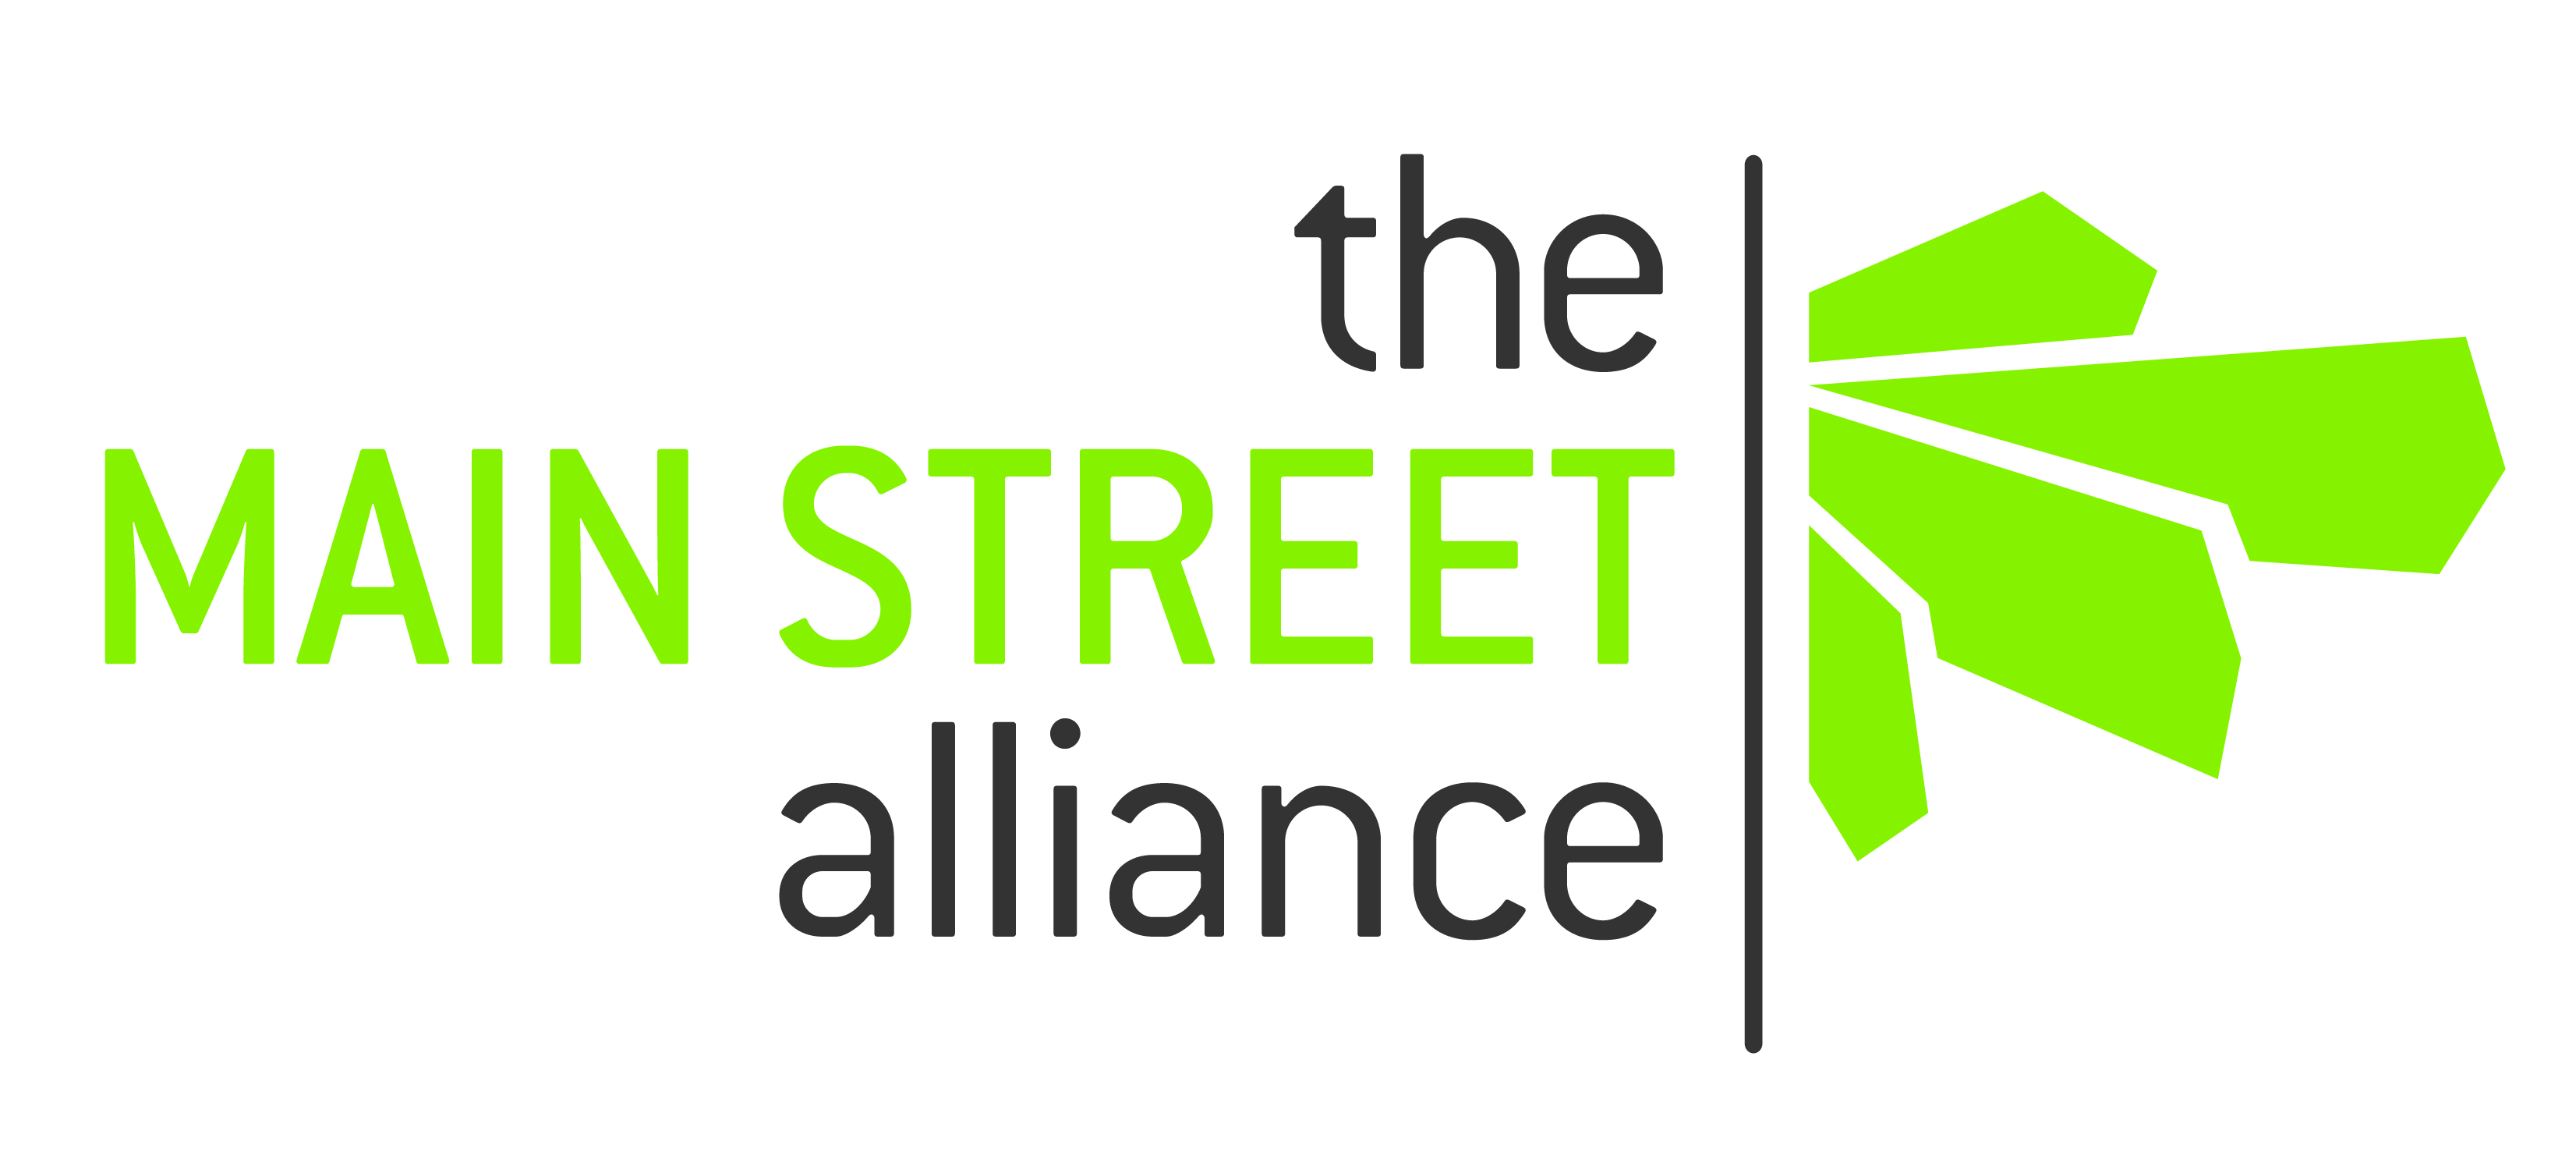 Main Street Alliance - 7.23